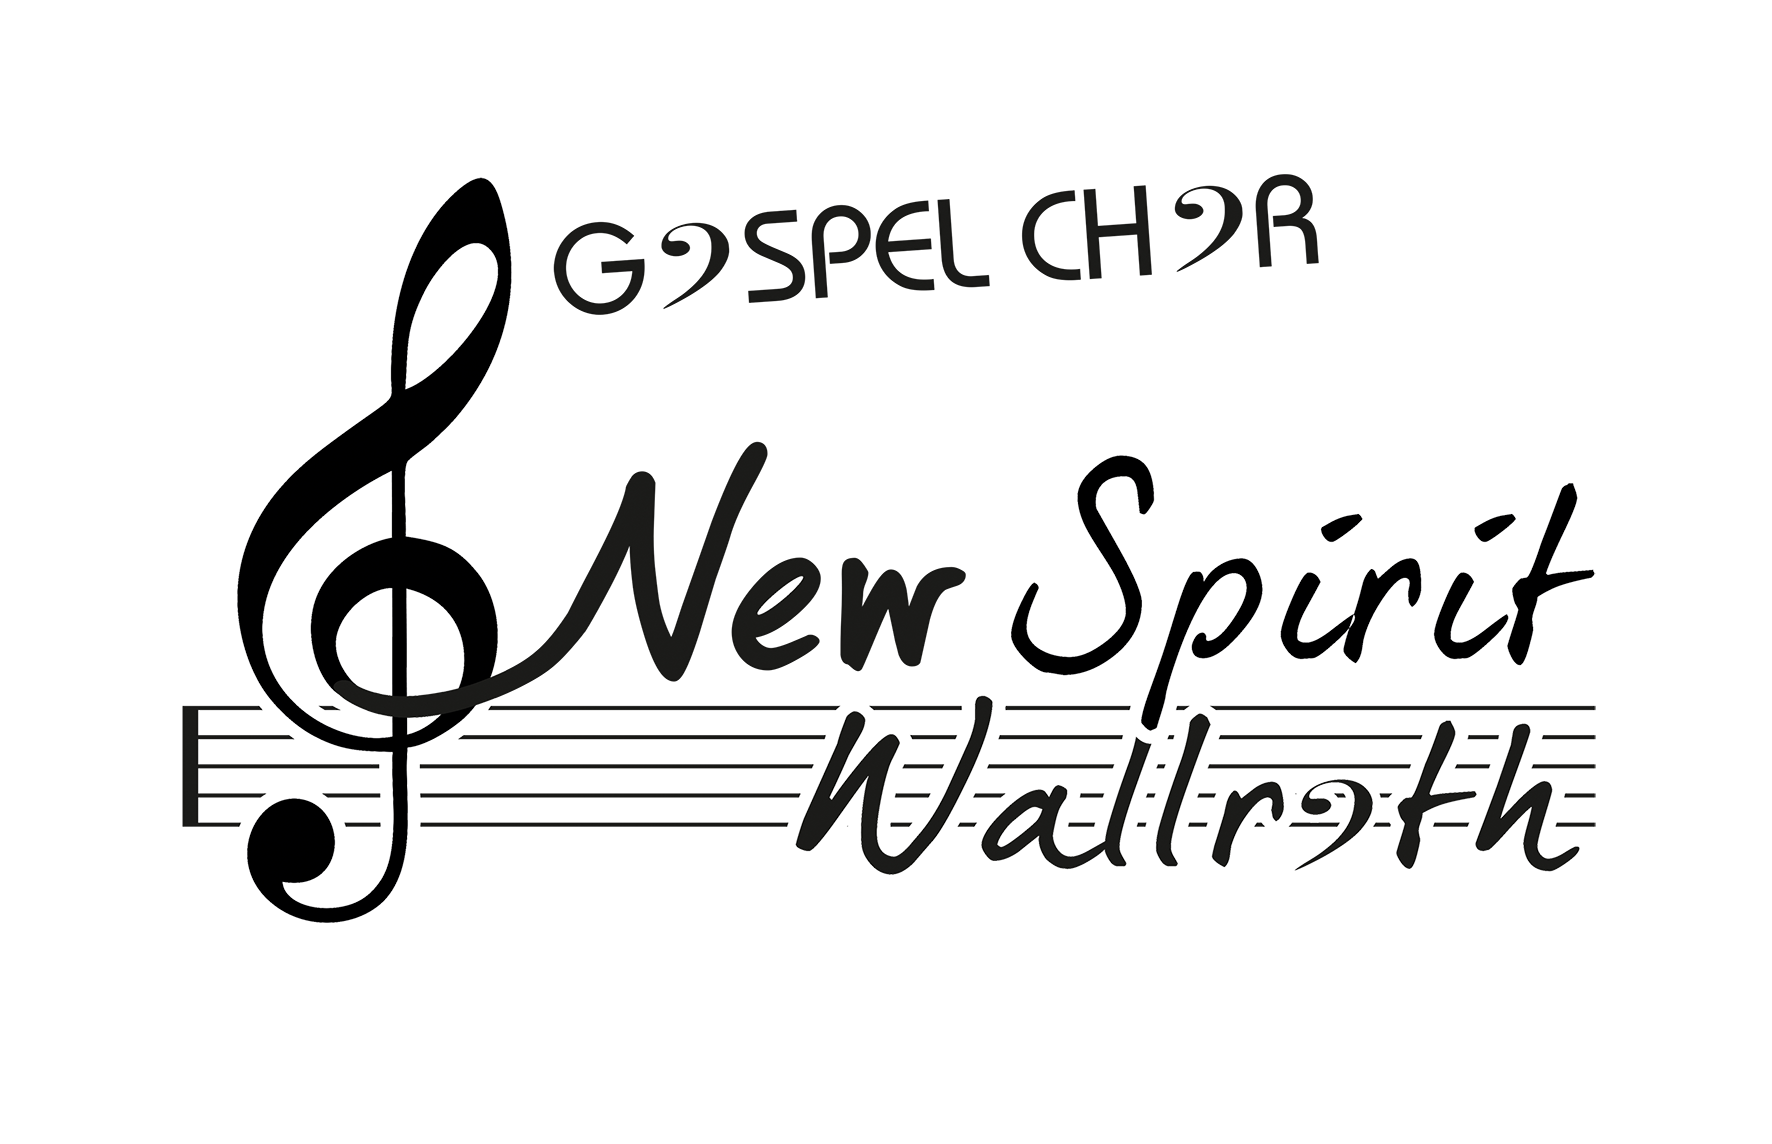 Gospelchor New Spirit Wallroth